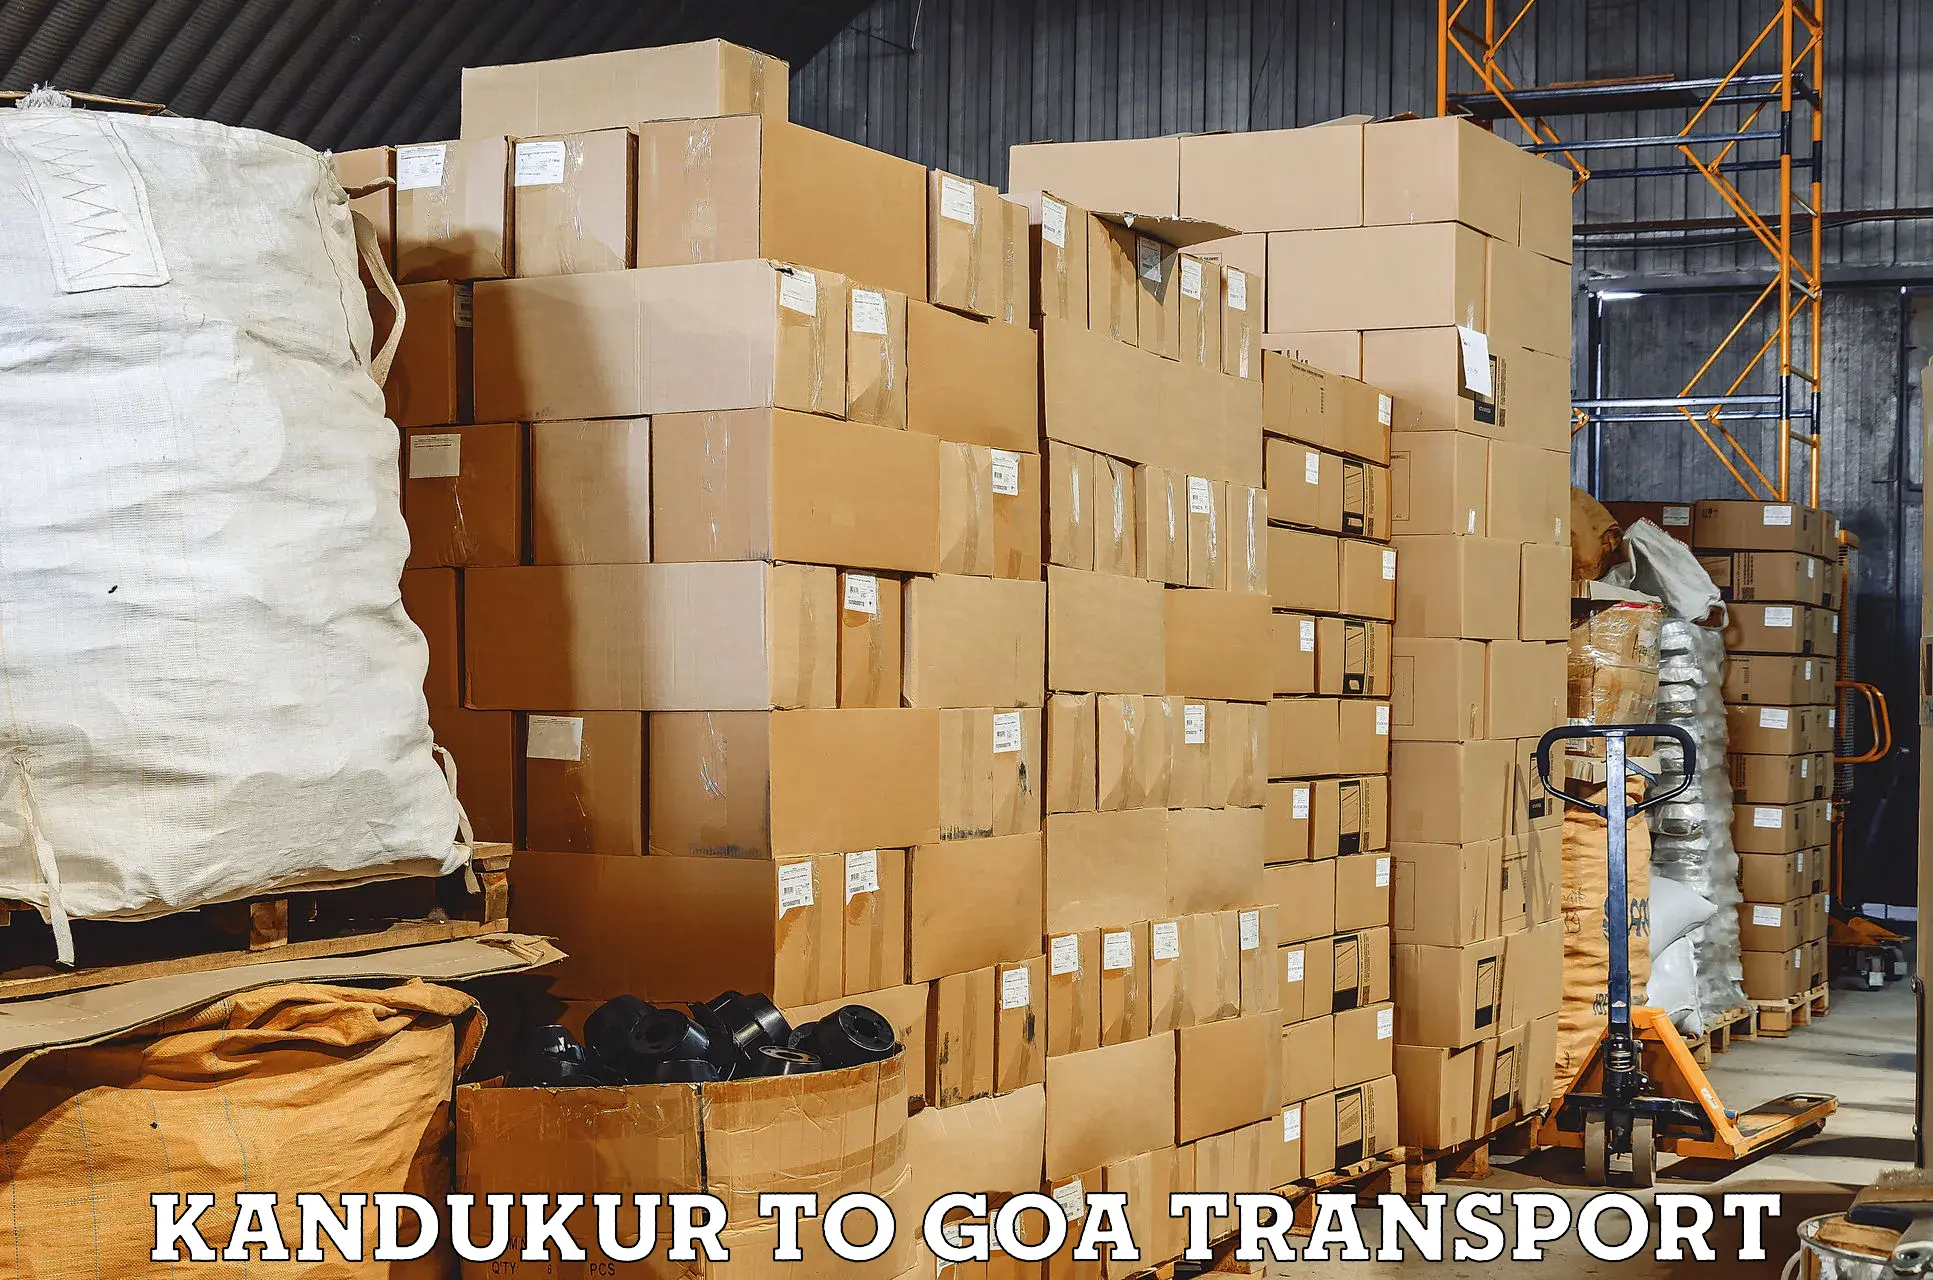 Daily transport service Kandukur to Panjim